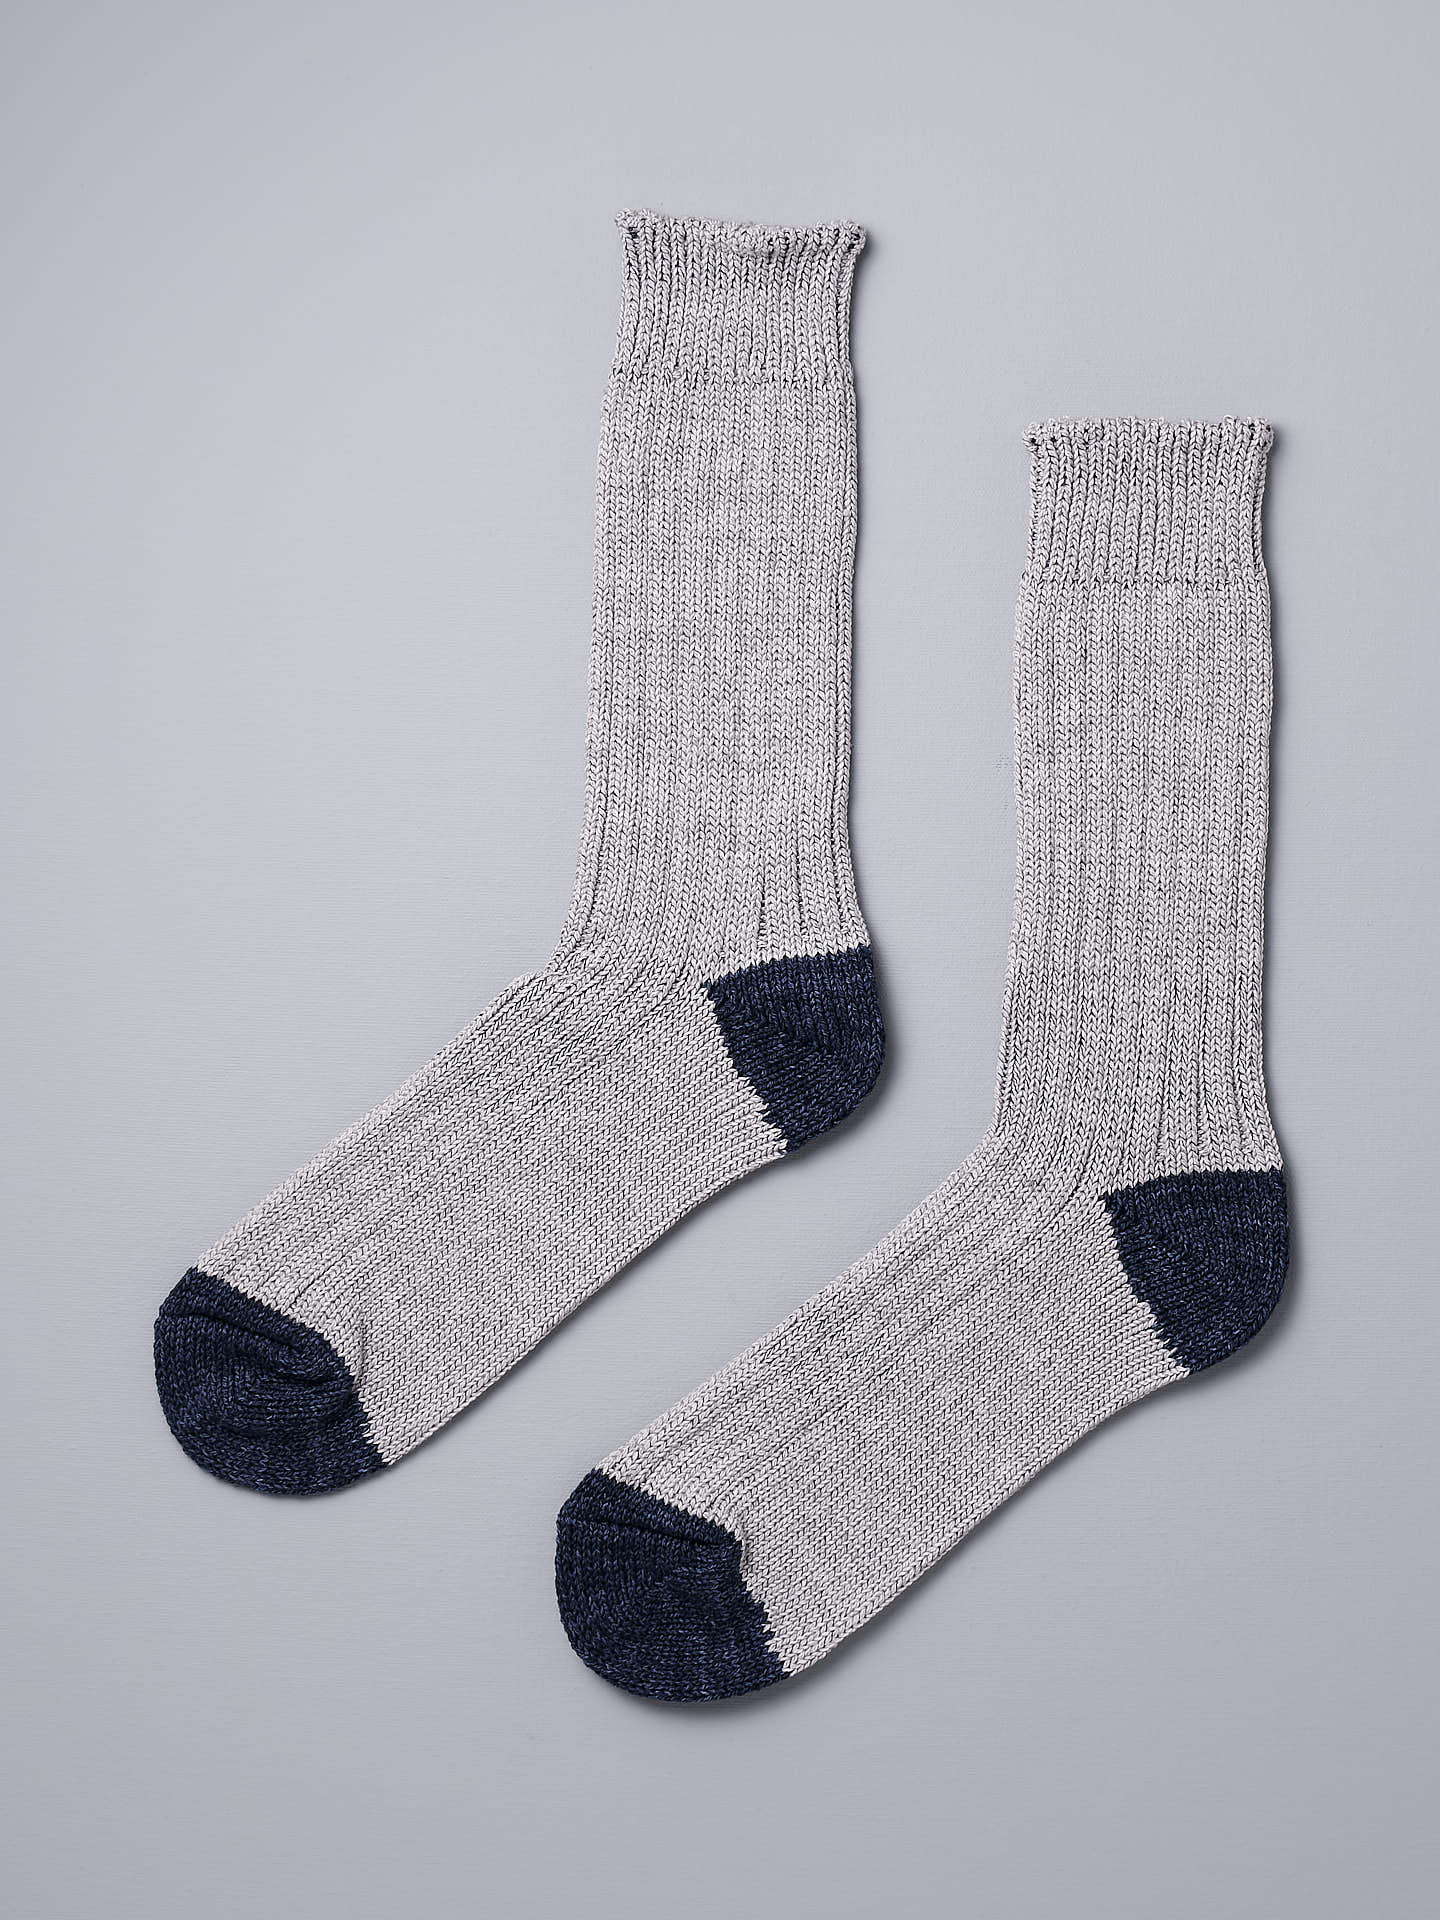 A pair of Boston Slab Socks – Grey Denim by Nishiguchi Kutsushita on a white background.